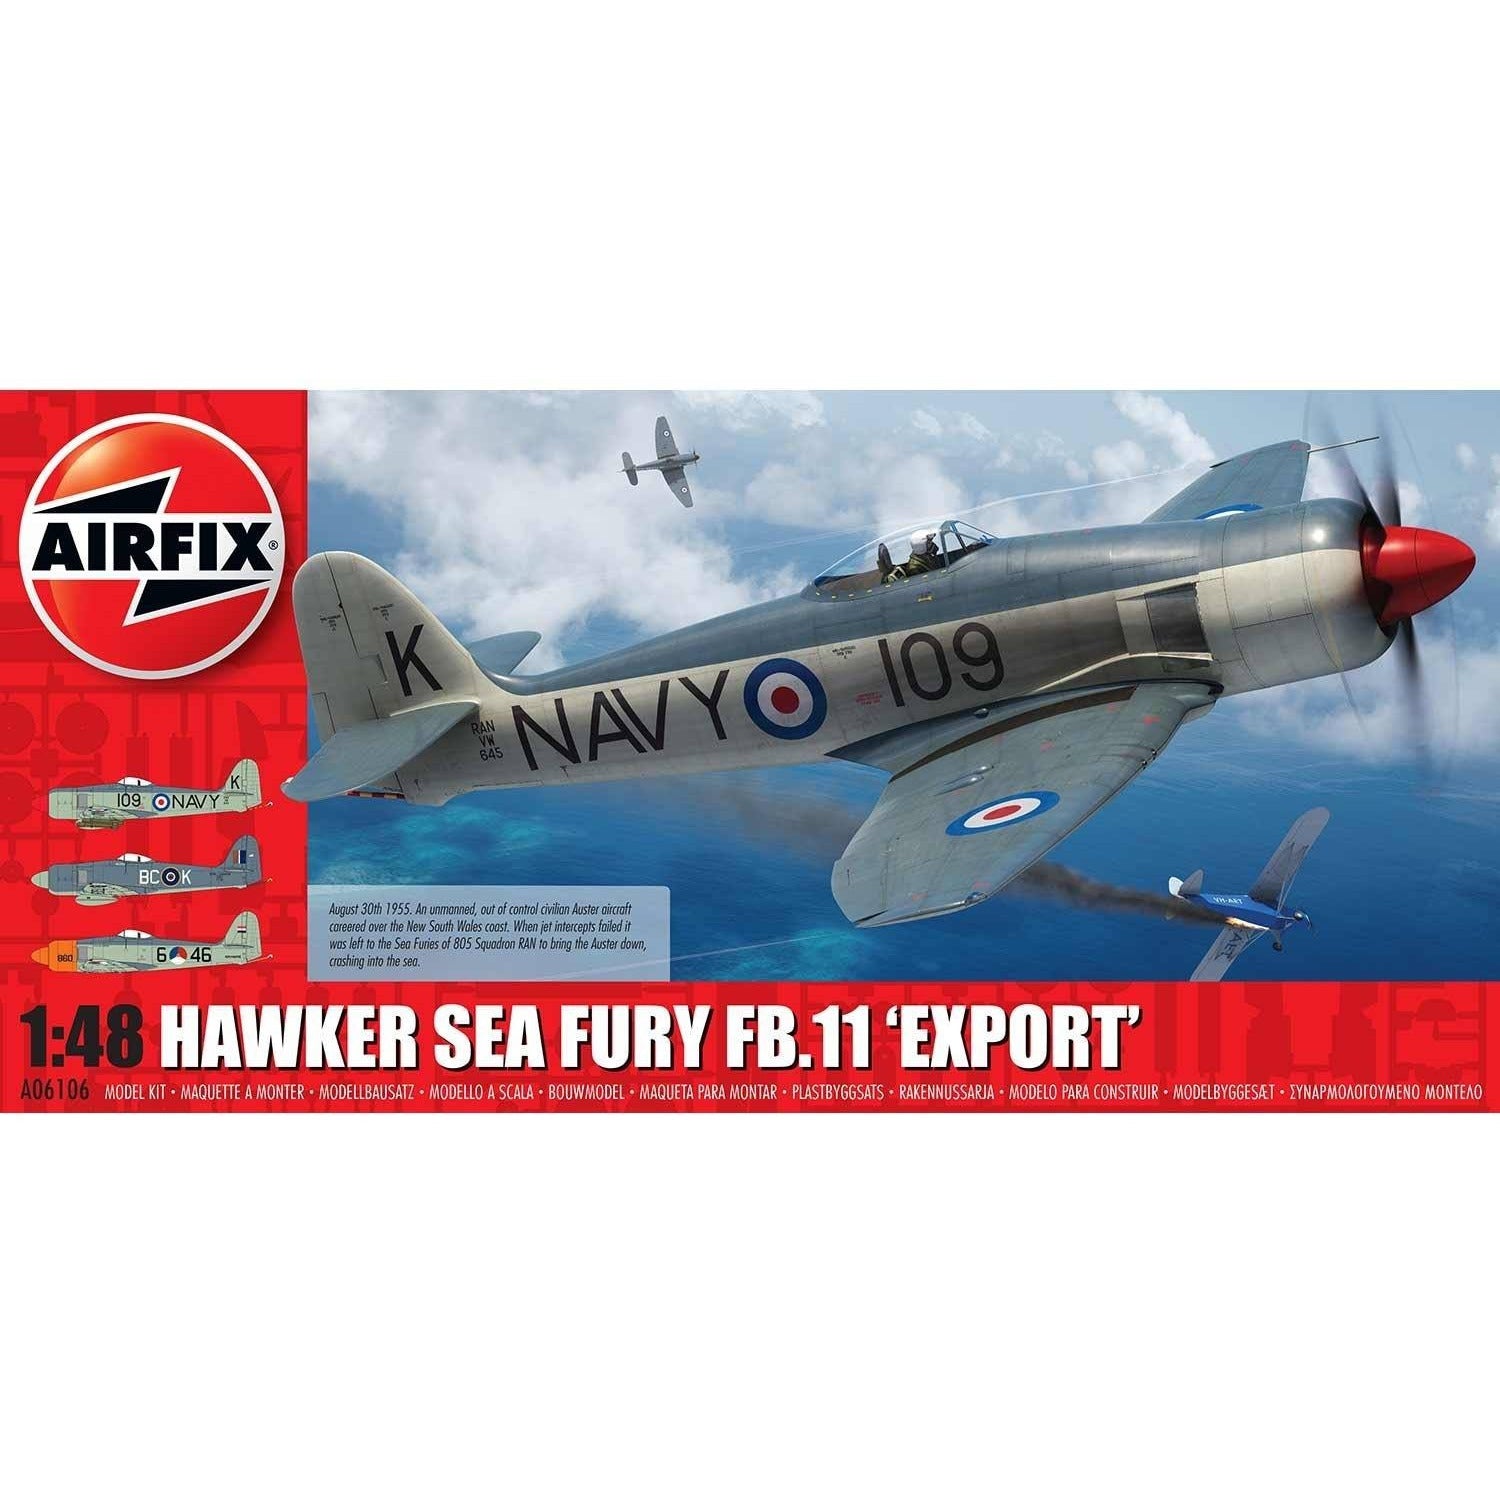 Sea Fury Hawker 1/48 by Airfix